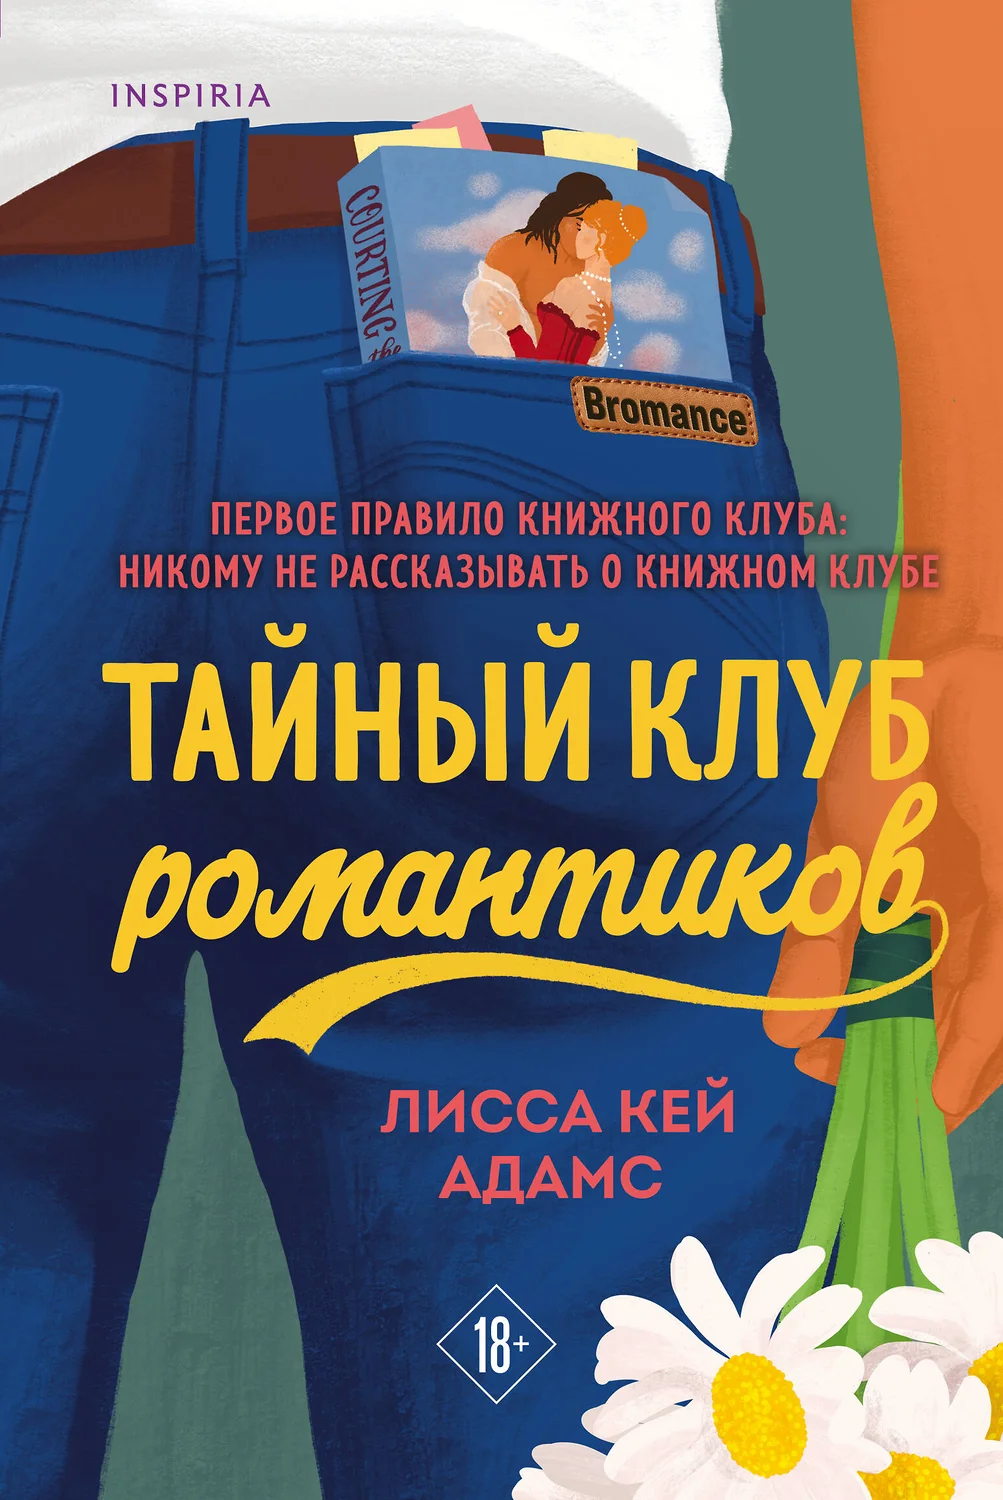 Bromance Тайный клуб романтиков Книга Адамс Кей Лисса 18+